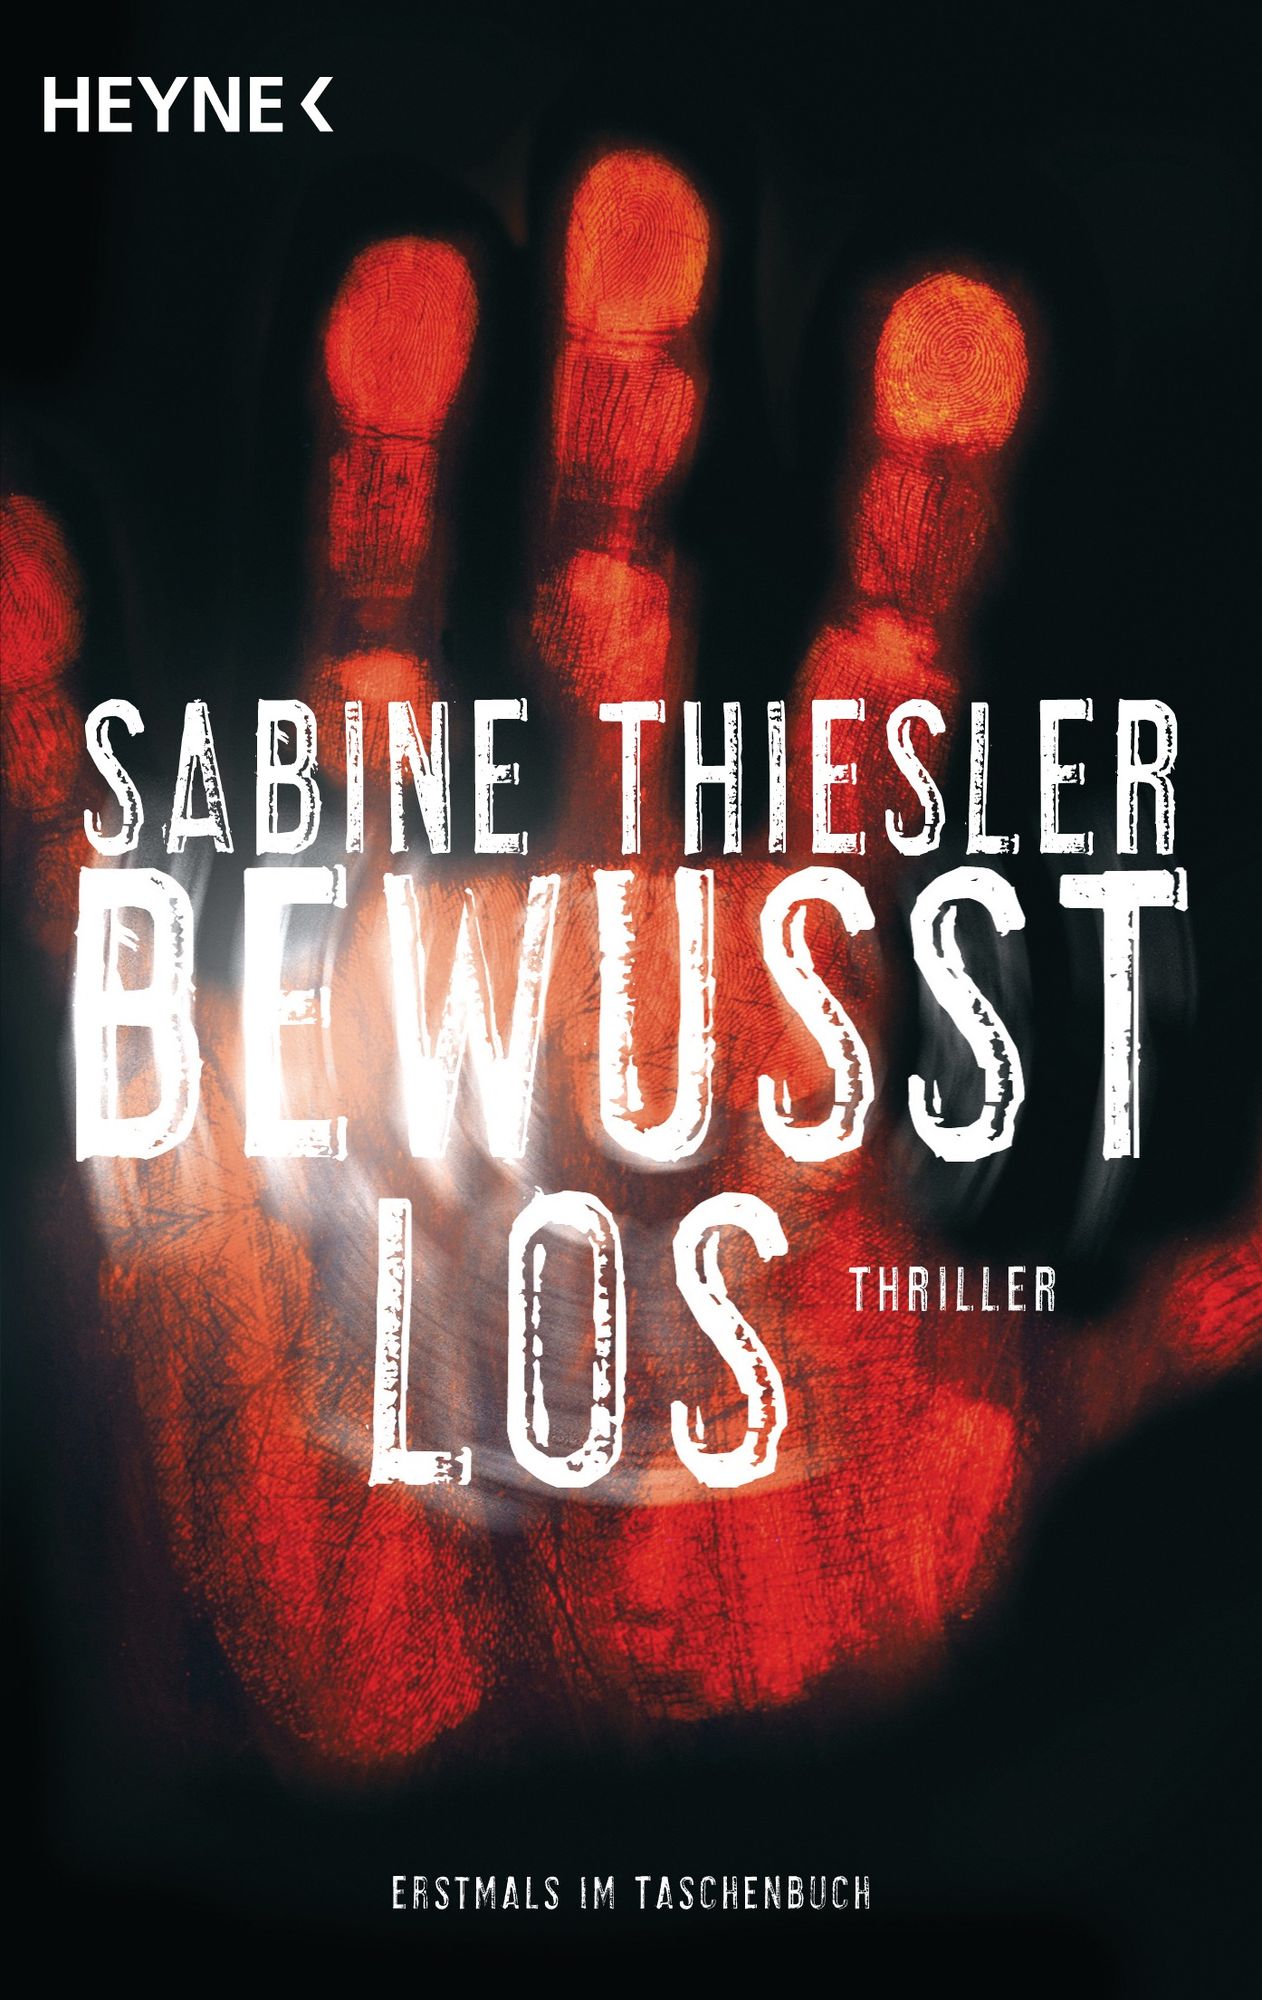 Im Versteck von Sabine Thiesler als Taschenbuch - bücher.de